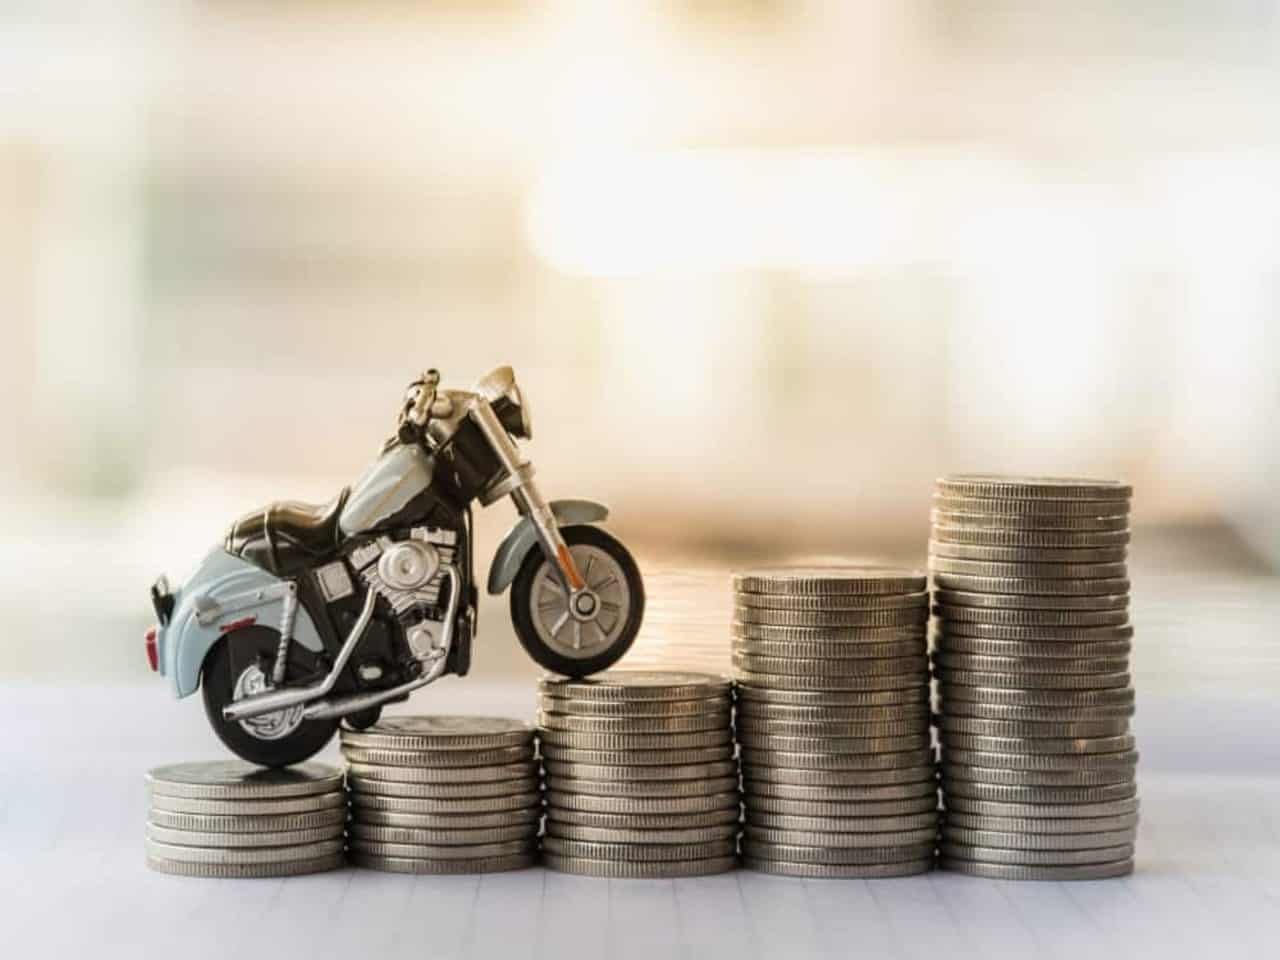 Renda extra com moto: 5 dicas tops para ganhar mais dinheiro – Tração Motos